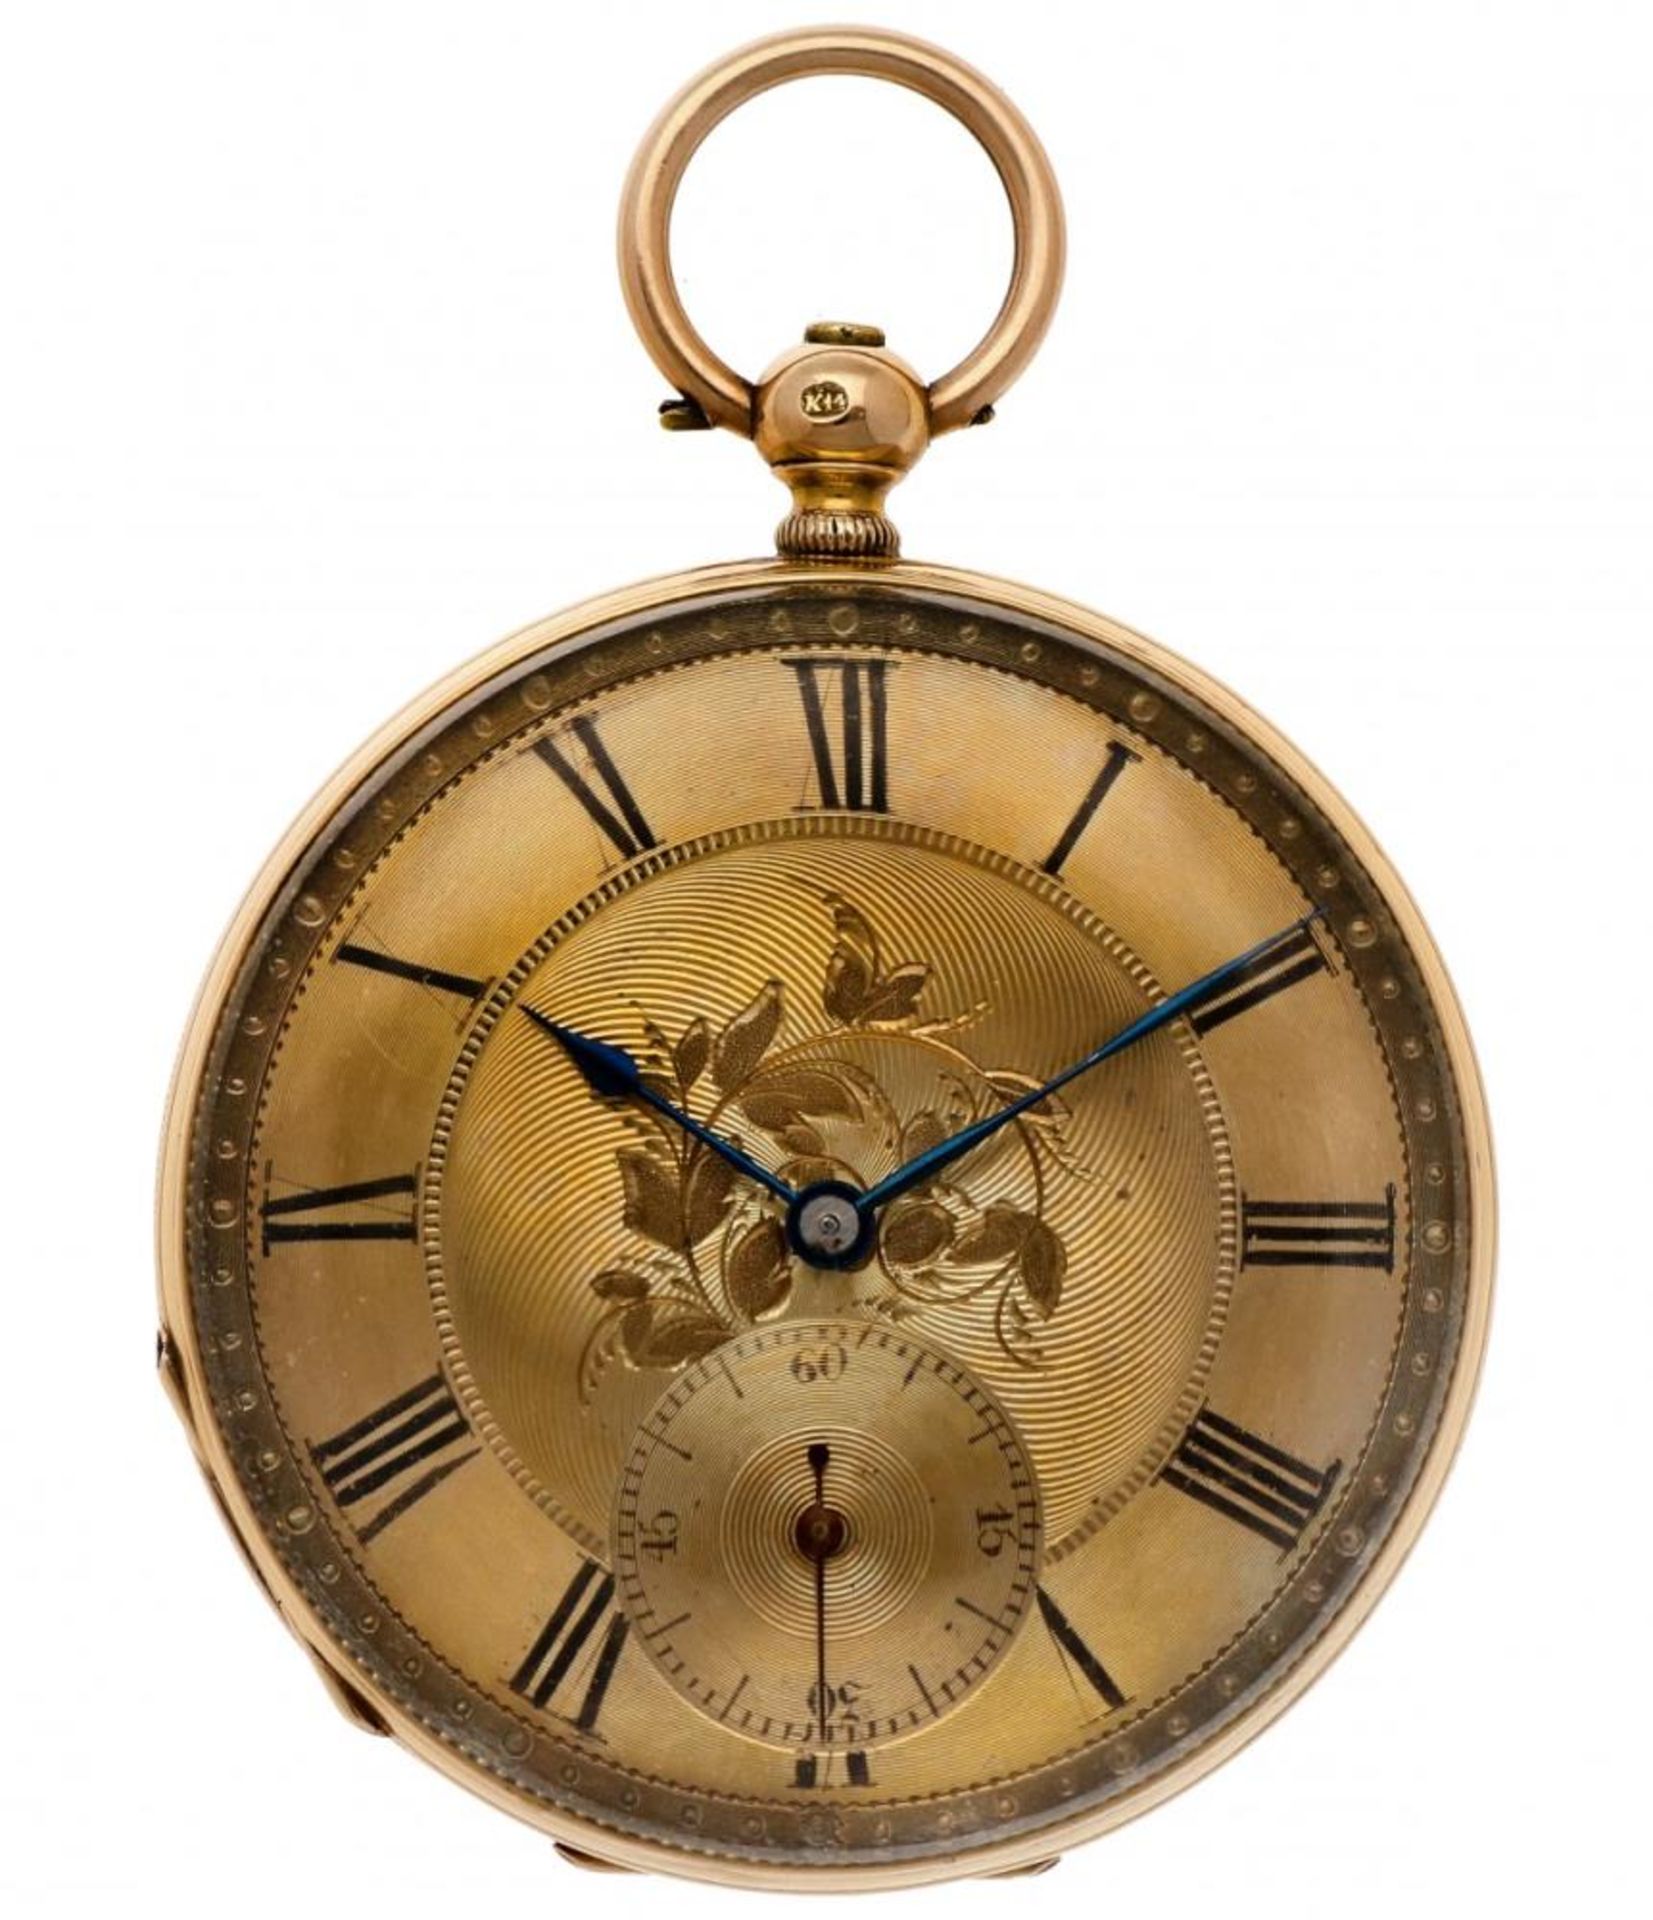 Pocket watch gold - Men's pocket watch - Manual winding - apprx. 1850.